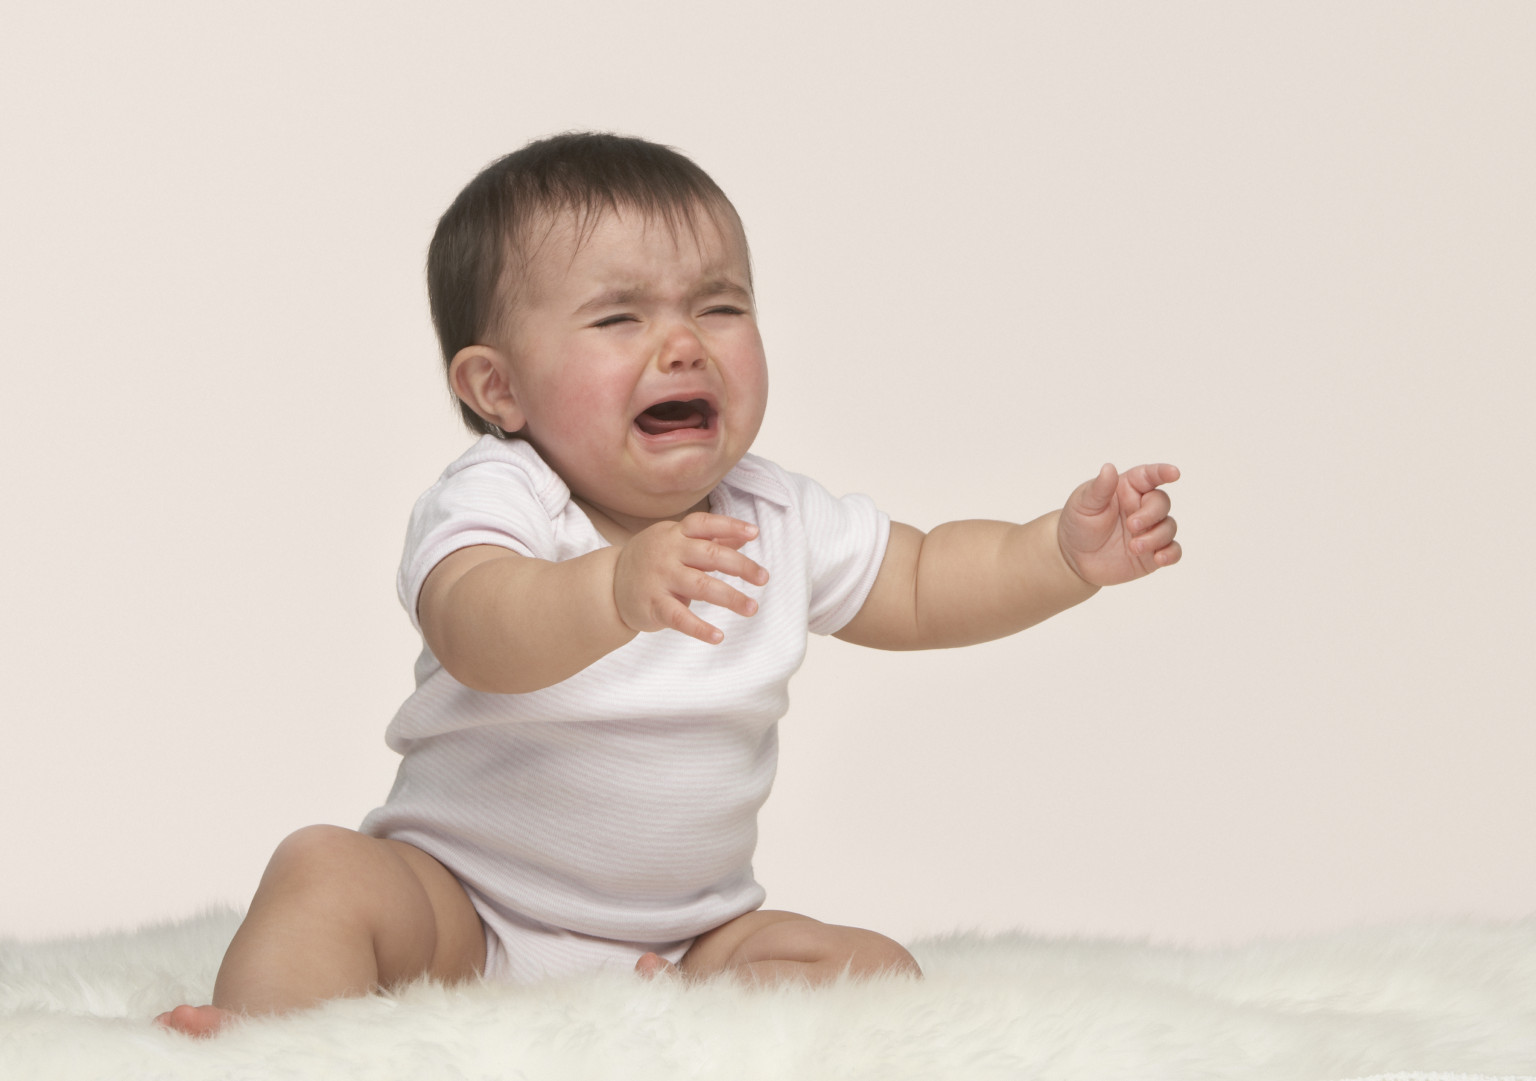 pianto del bebè e i suoi significati